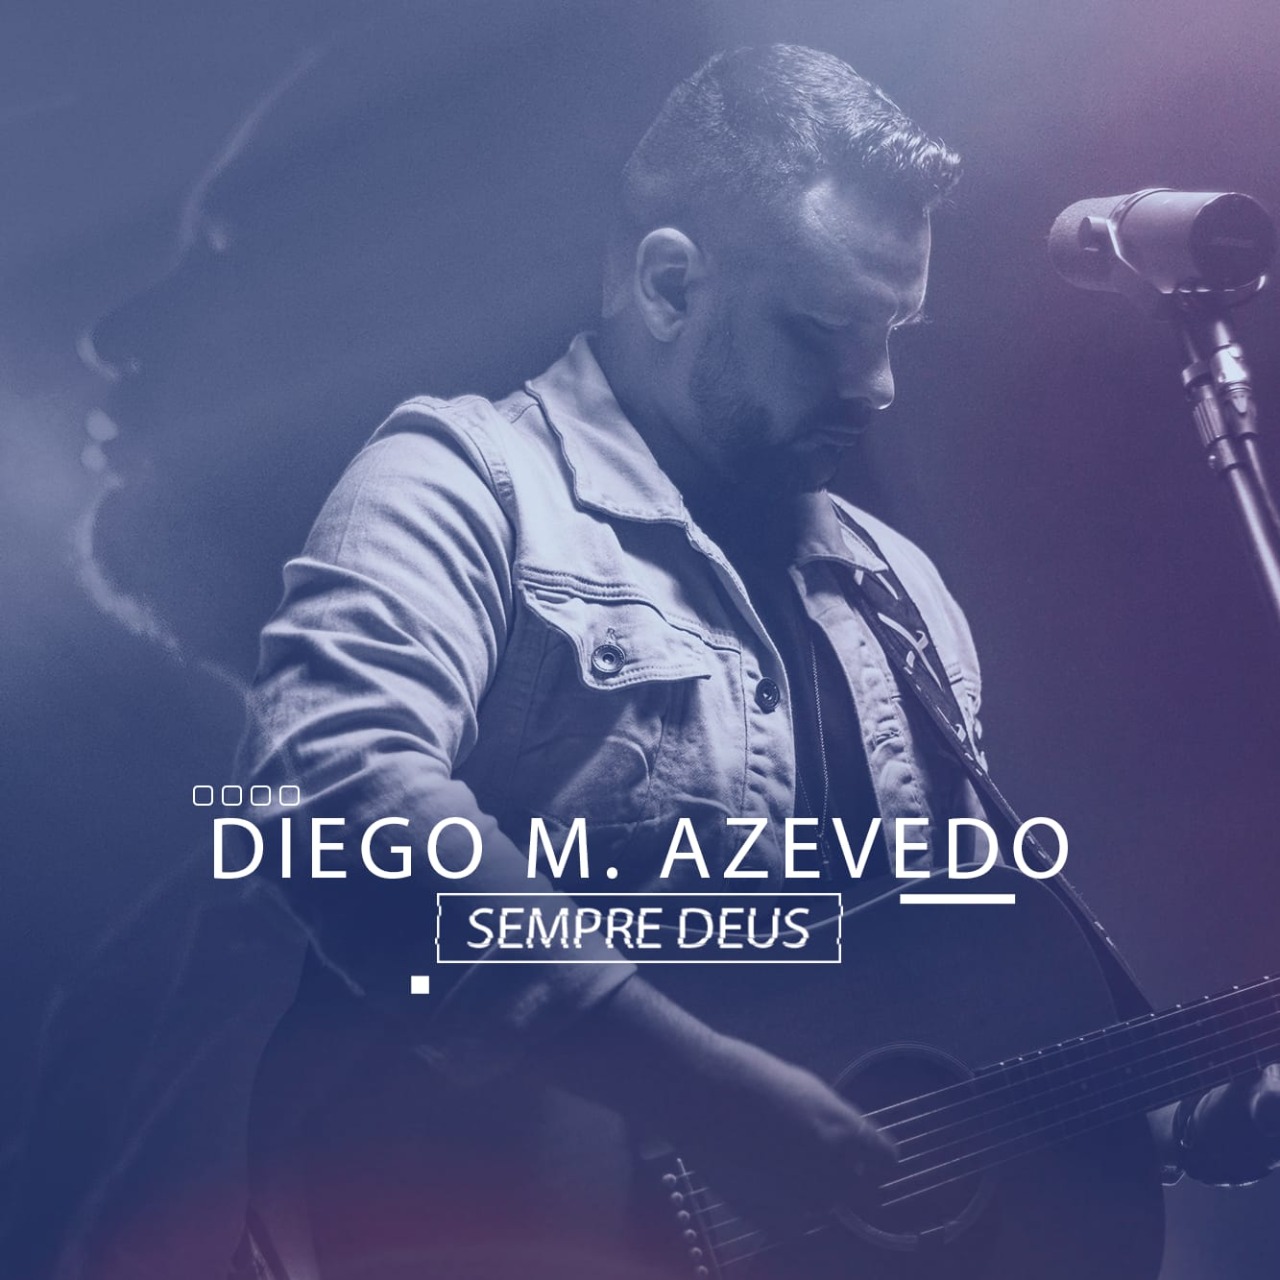 Diego M. Azevedo comemora dez anos de carreira com o single autoral “Sempre Deus”